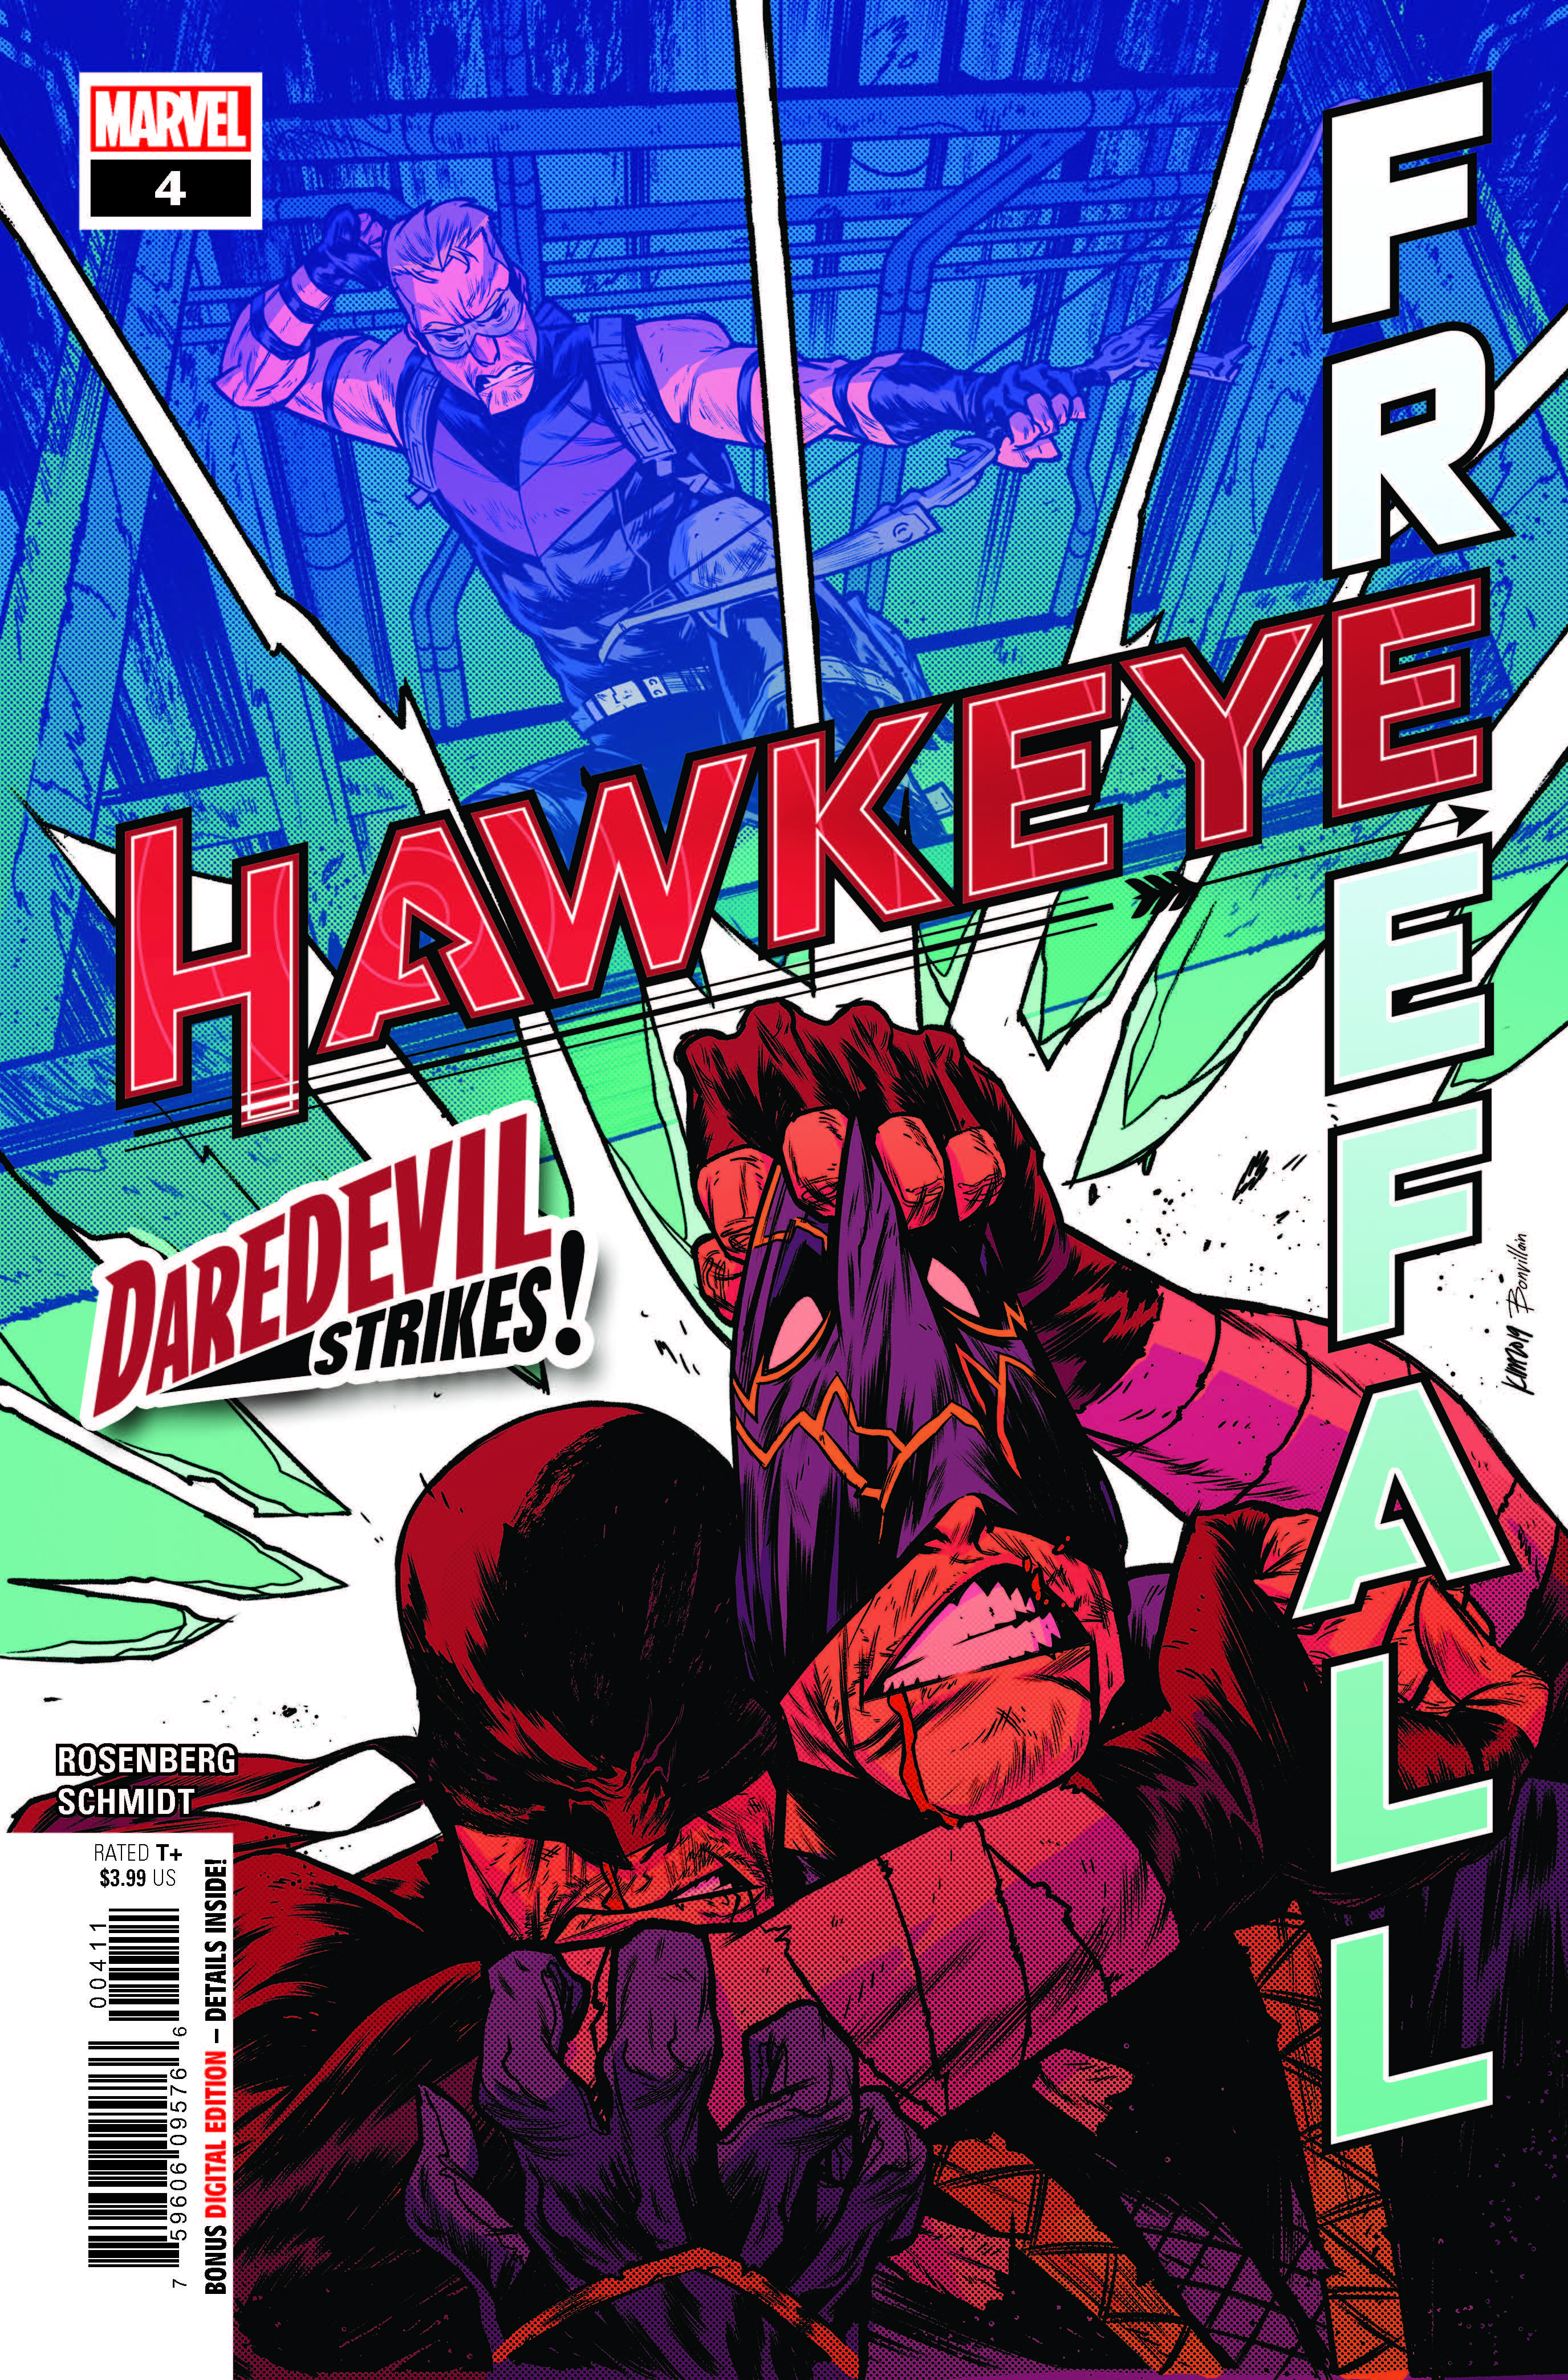 Hawkeye Freefall #4